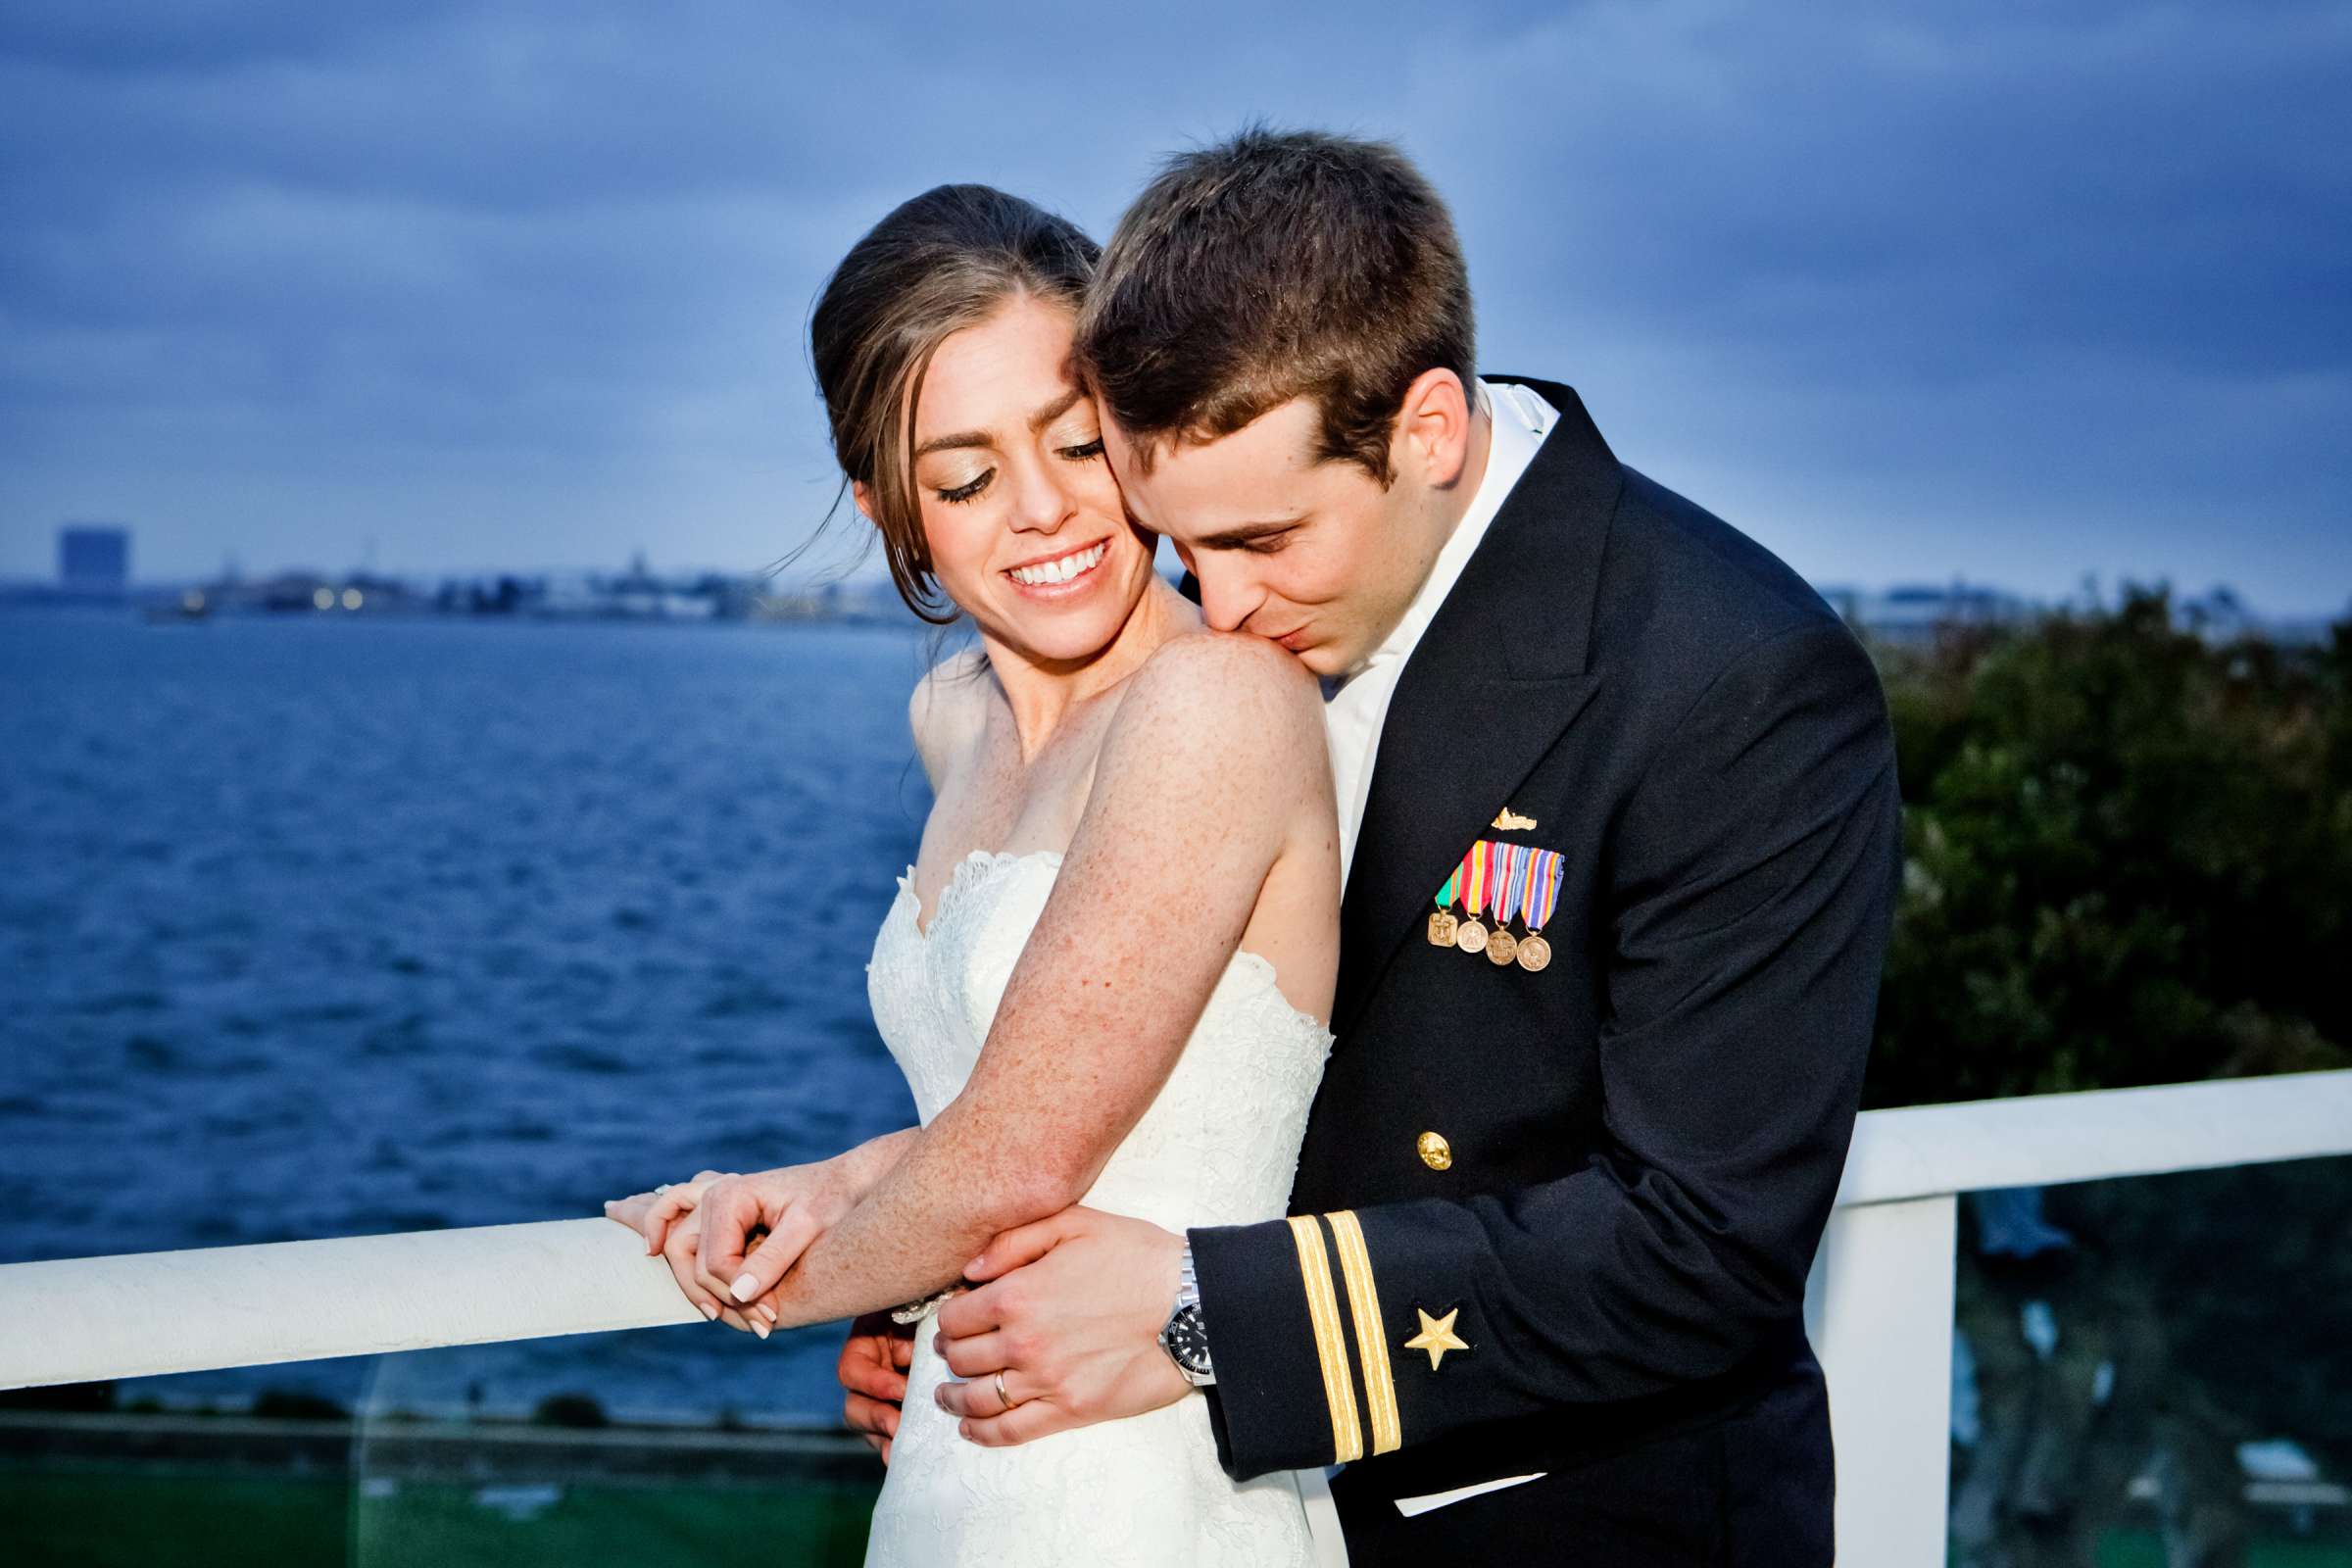 Admiral Kidd Club Wedding coordinated by I Do Weddings, Ashley and Rhett Wedding Photo #358419 by True Photography